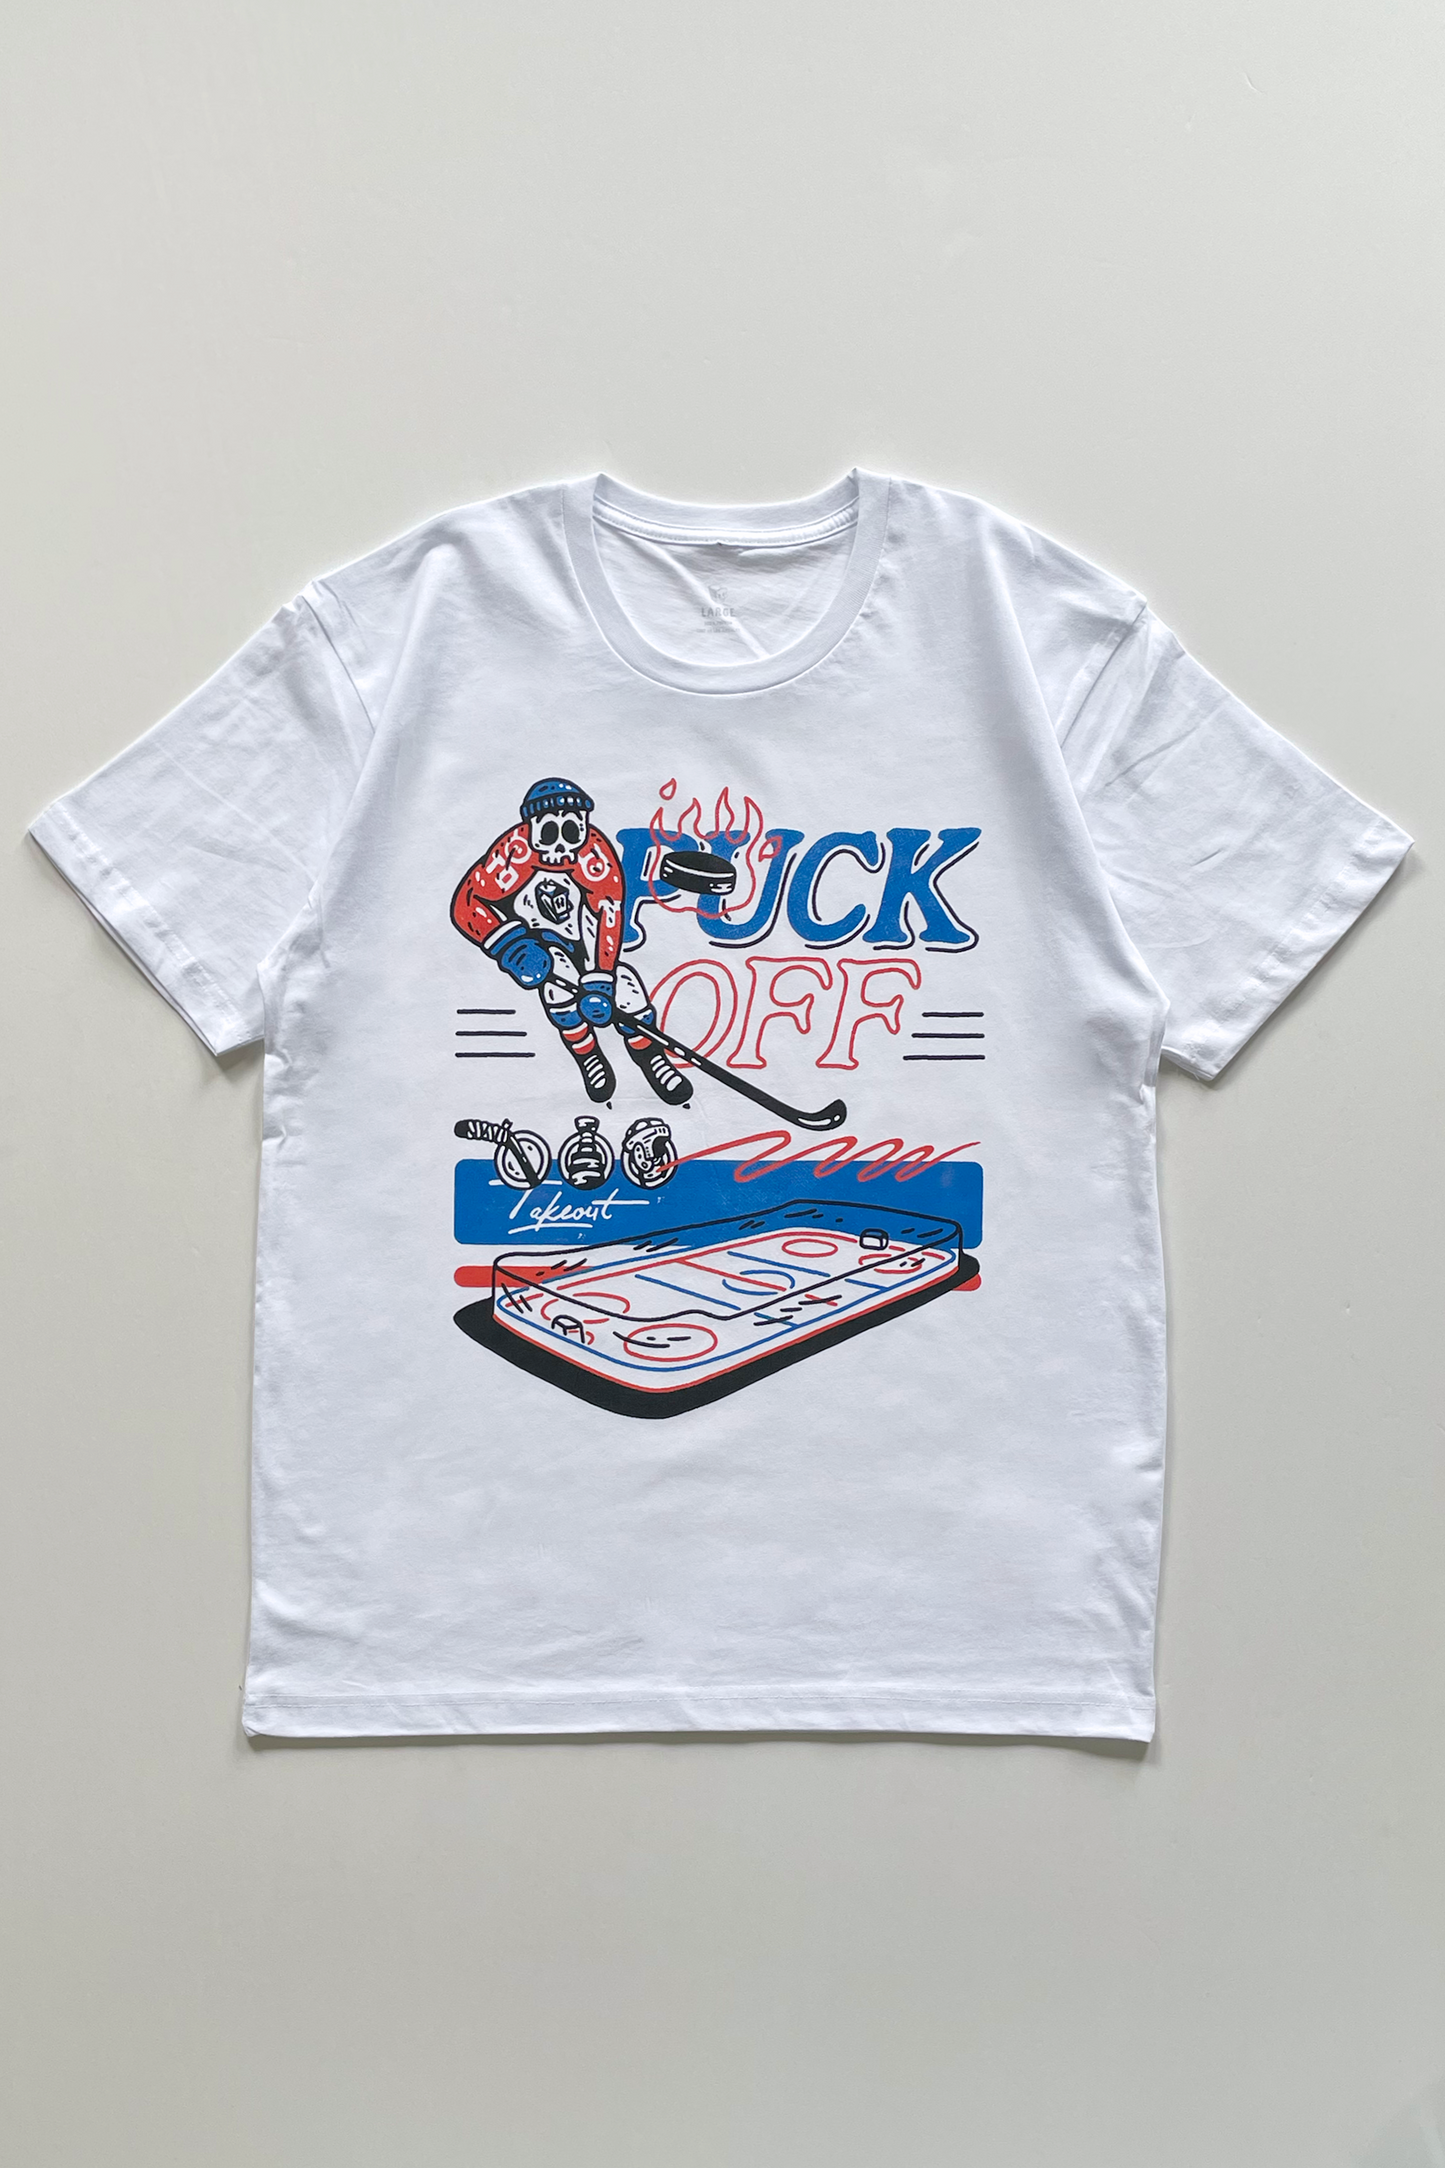 Puck Off T-shirt